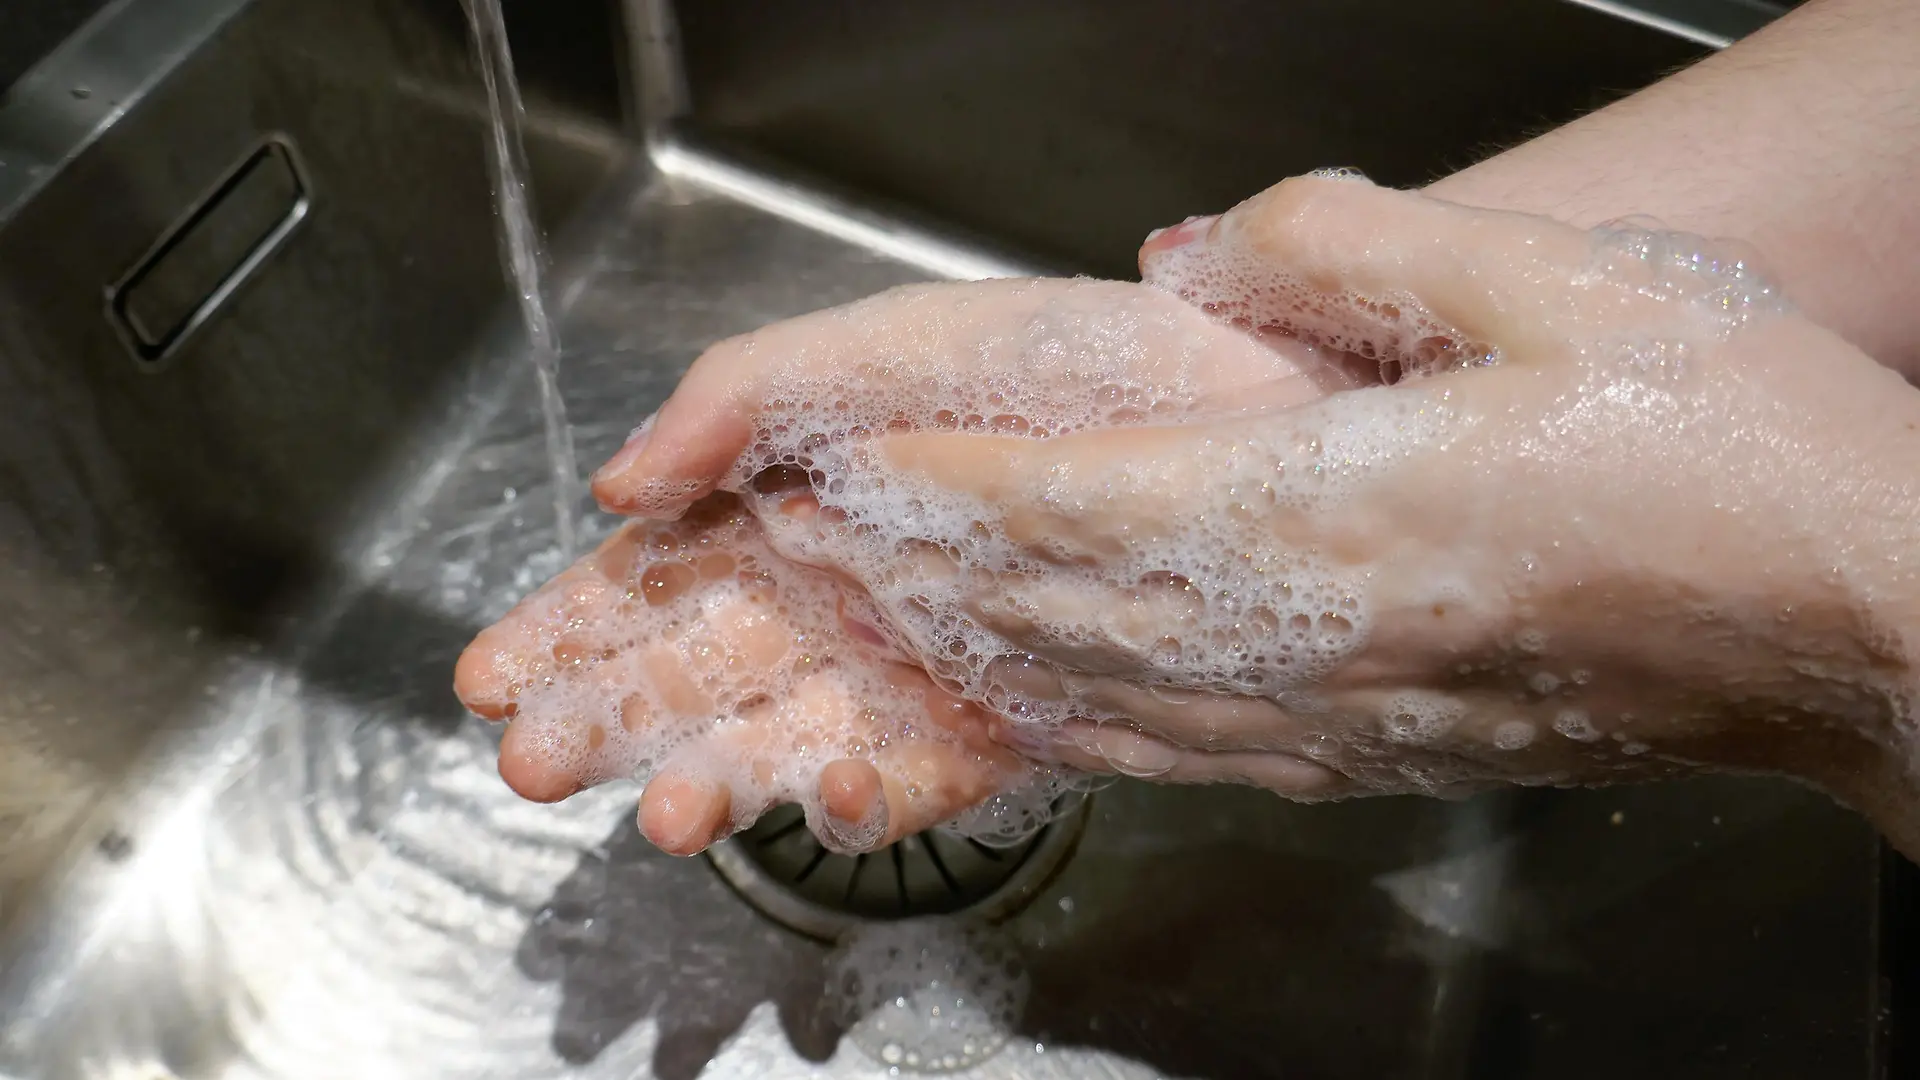 zbliżenie mycia rąk